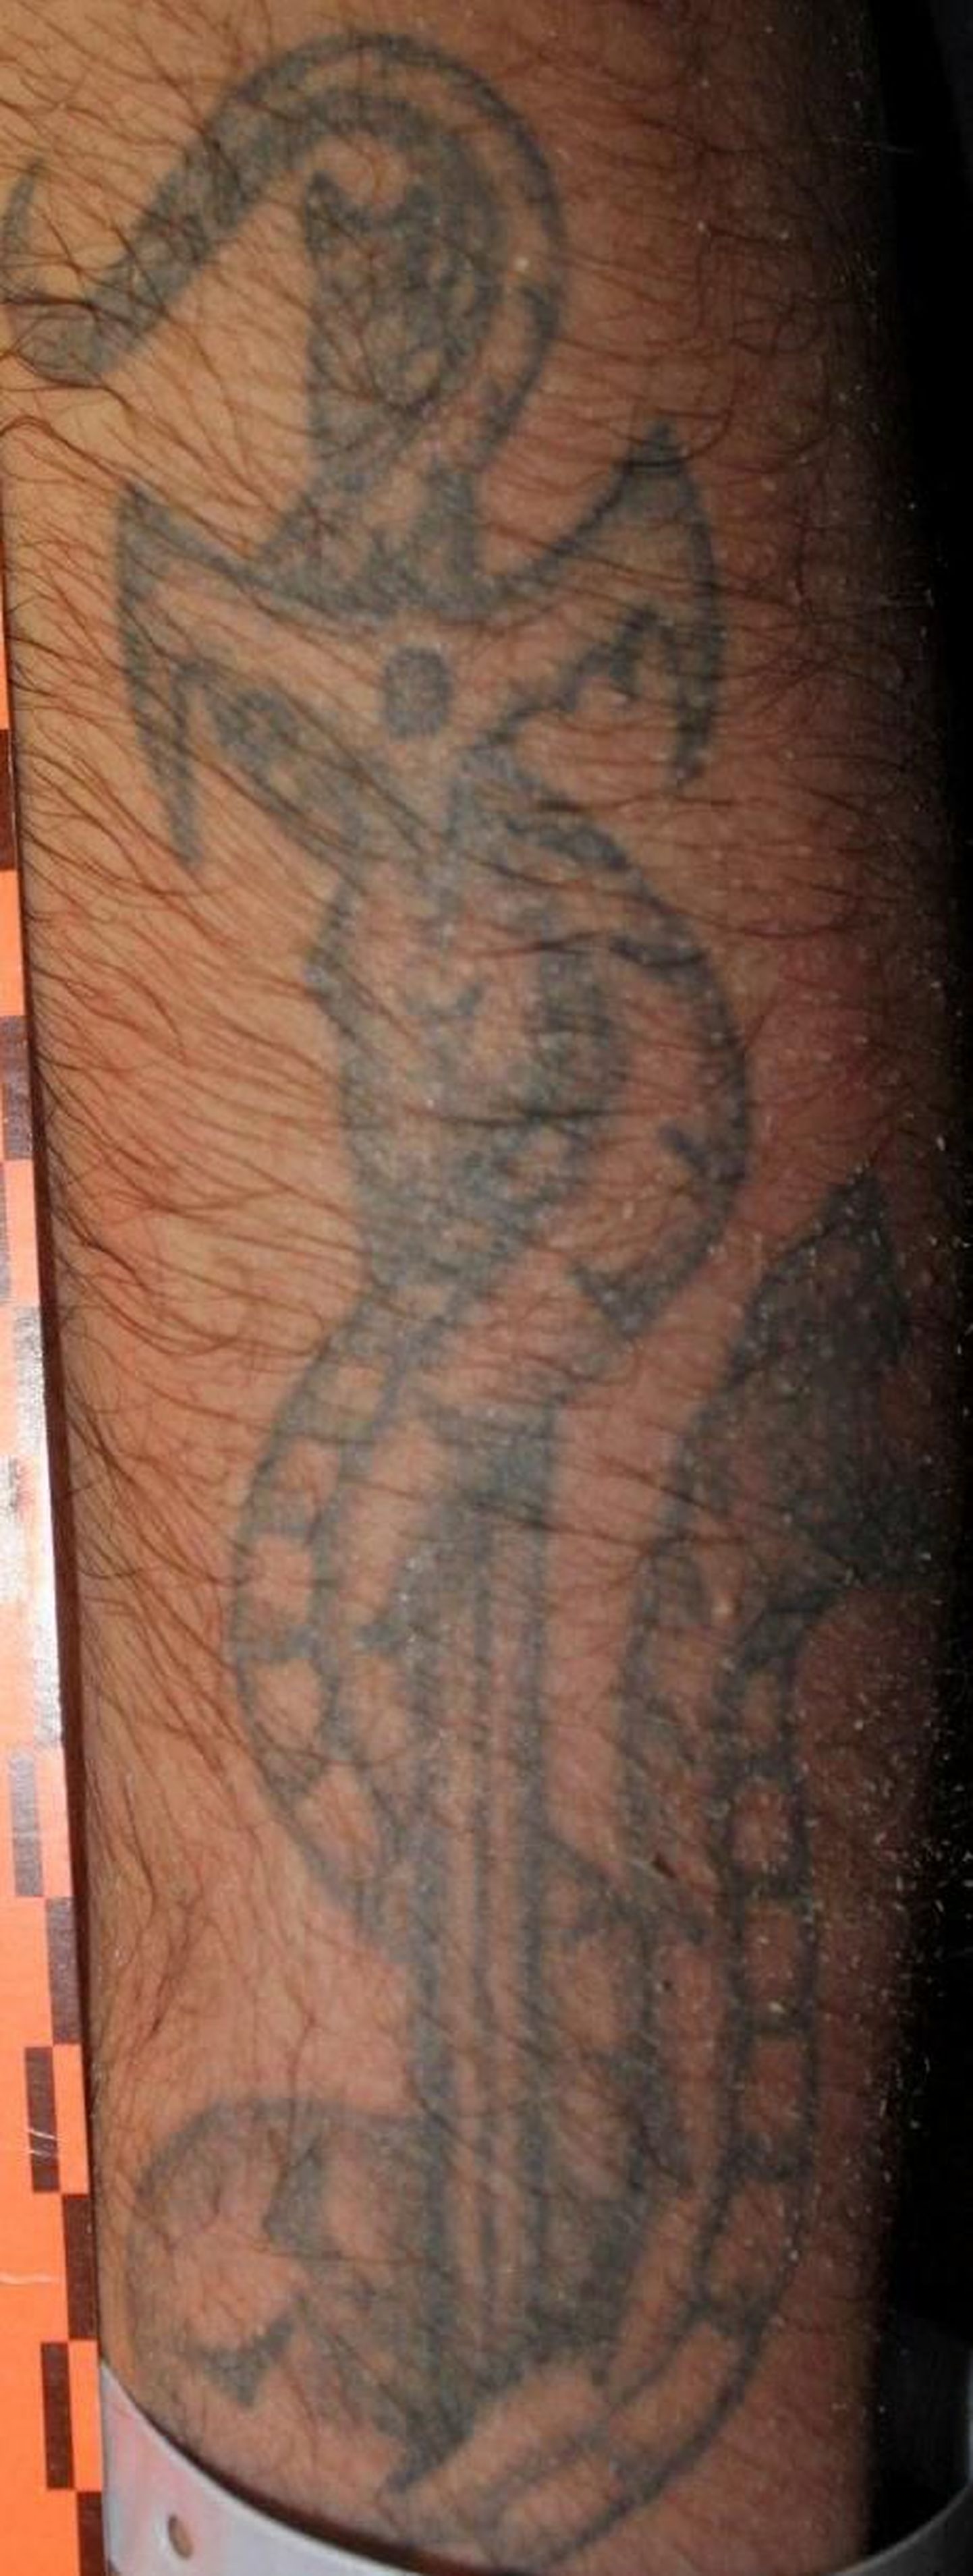 Татуировка на плече у мужчины, труп которого обнаружен 22 ноября